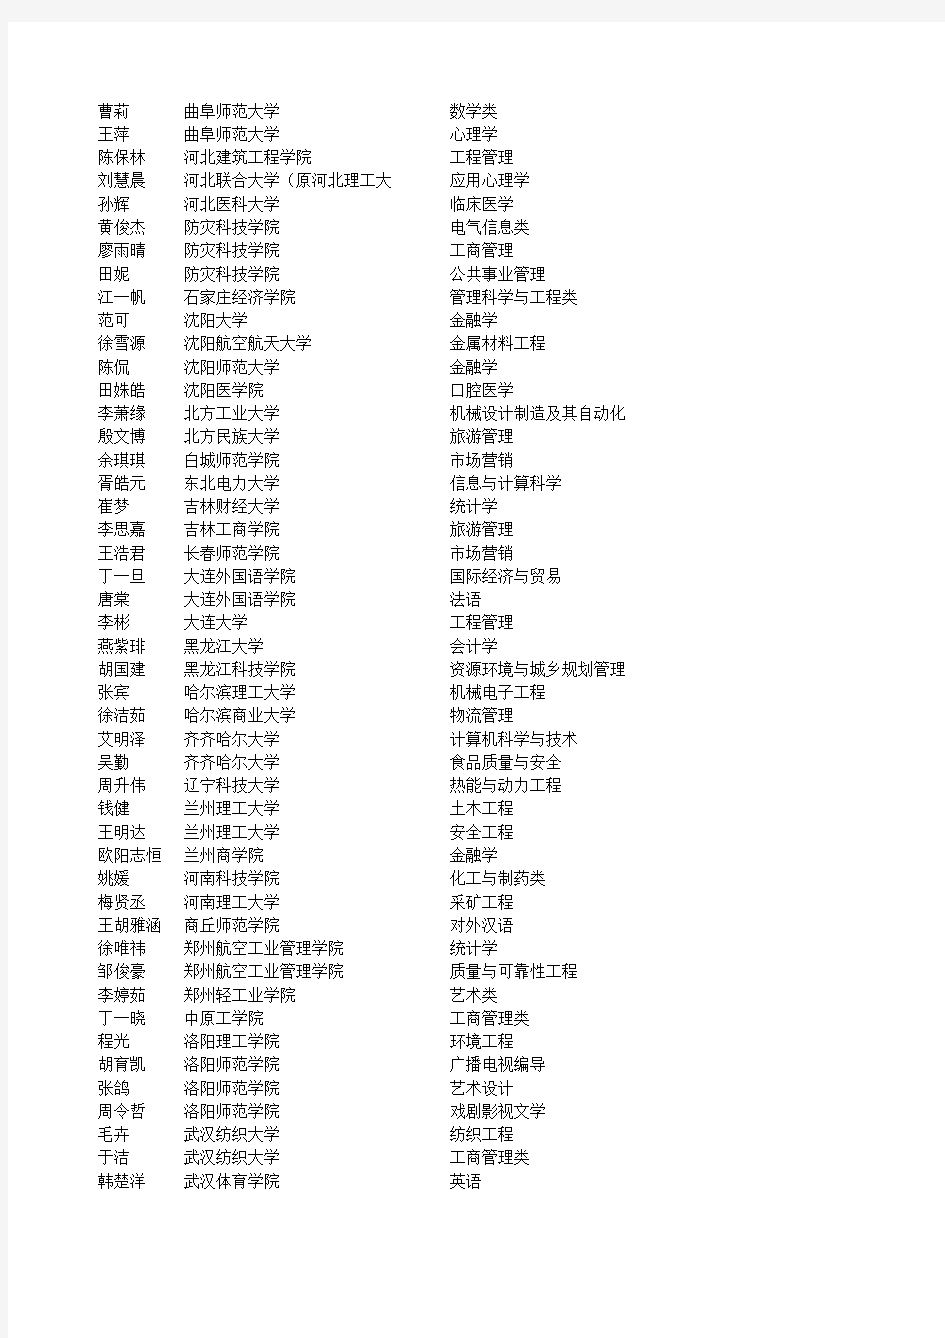 九江一中2011年高考正式录取名单下载(第二批公布)